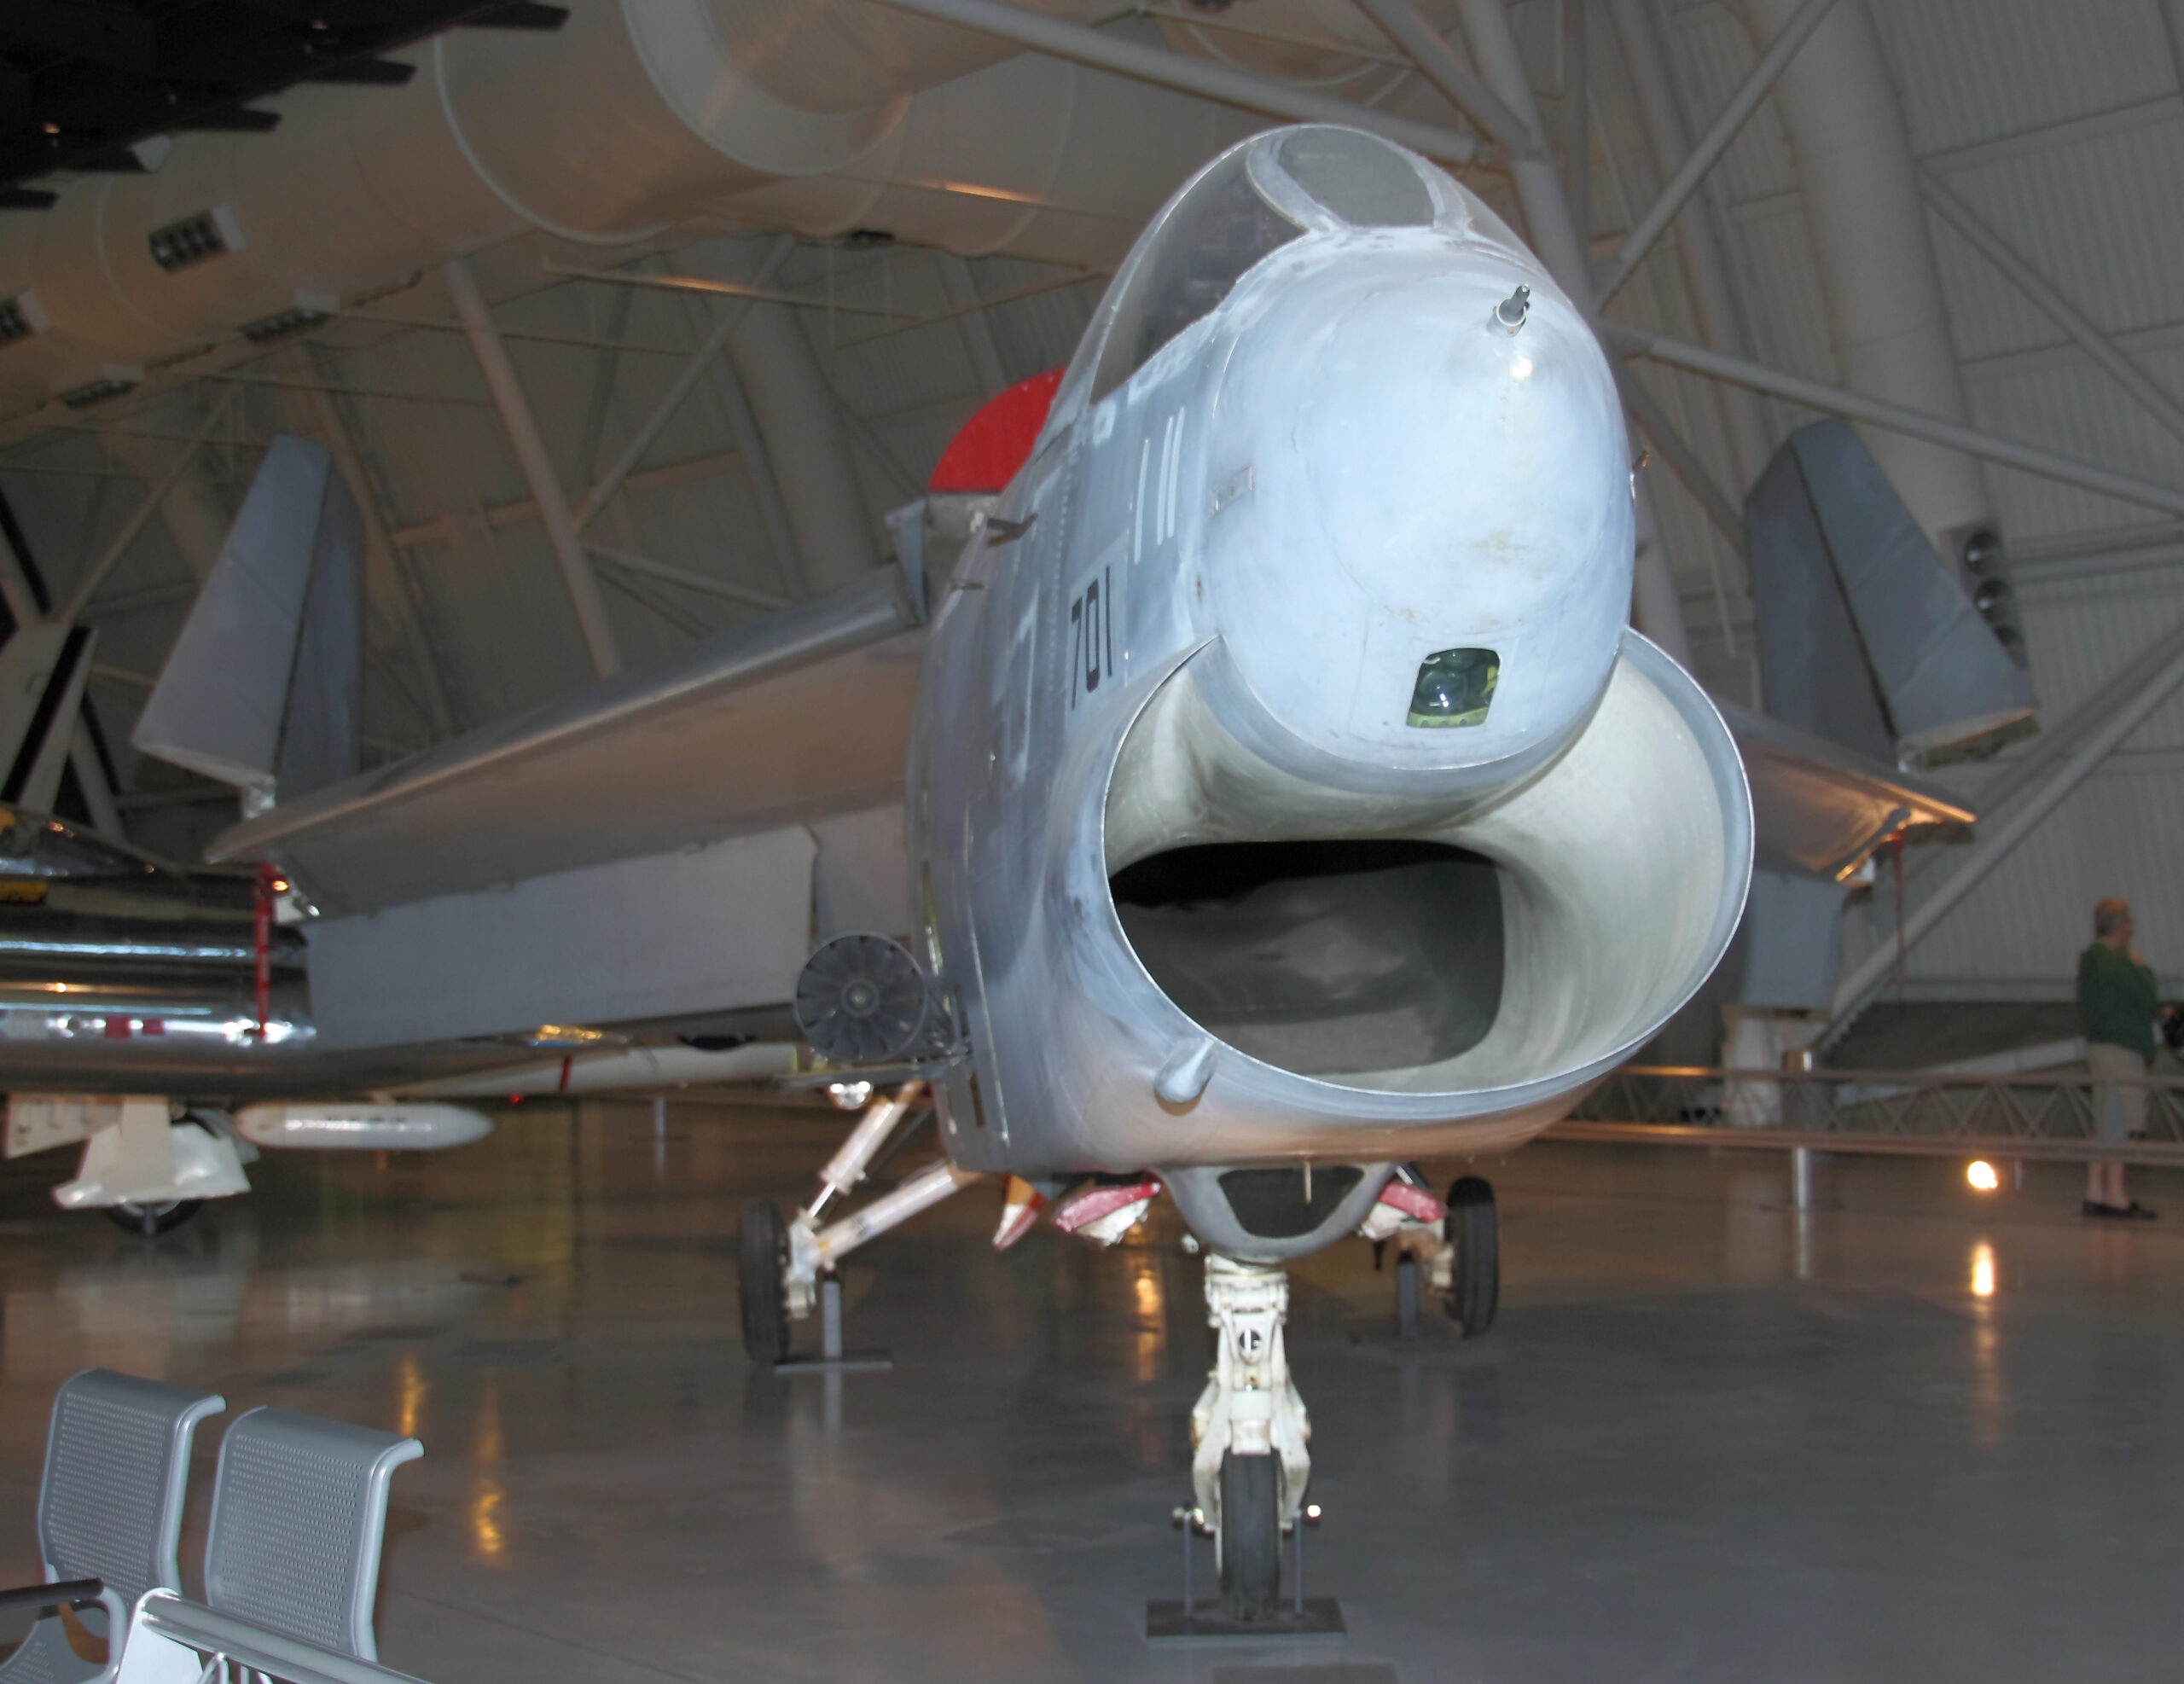 Vought F-8 Crusader - Kampfflugzeug der US Navy mit verstellbarem Einstellwinkel der Tragflächen